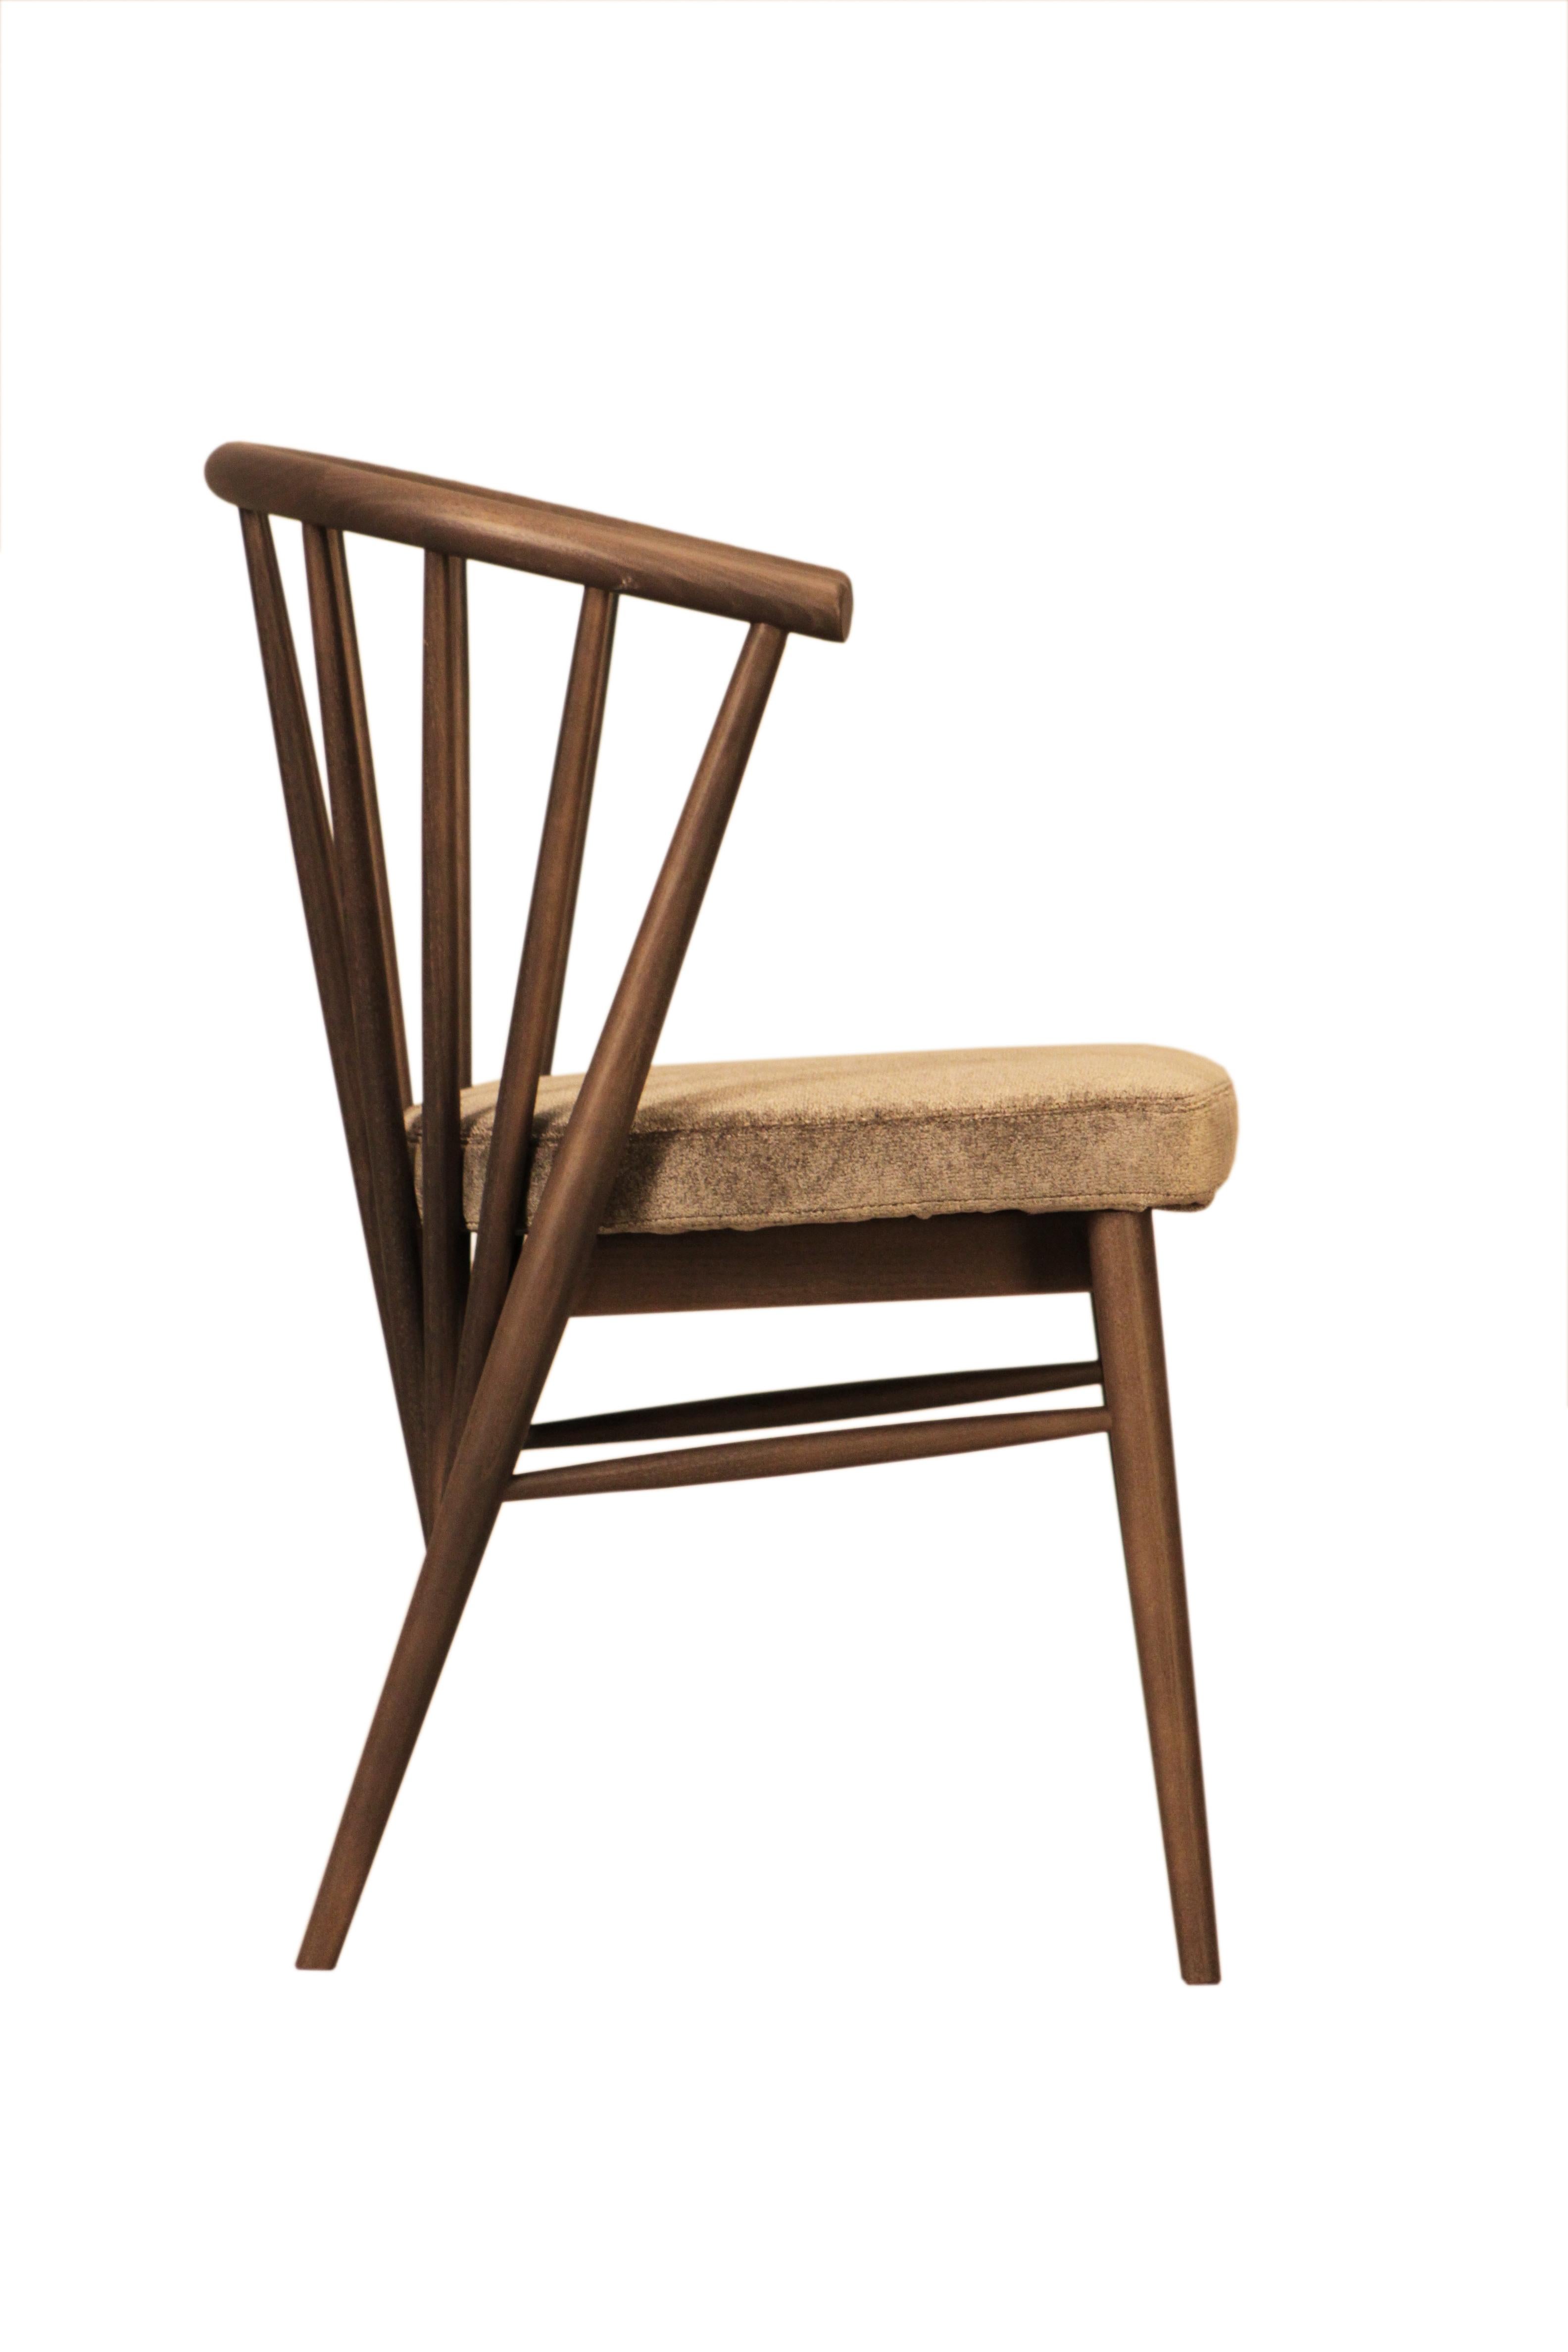 Jenny ist ein gepolsterter Stuhl aus handgedrechseltem Eschenholz. Die geschwungene Rückenlehne besteht aus einer Reihe von Eschenstäben, die in verschiedenen Winkeln befestigt sind.
Anpassbar mit verschiedenen Holzoberflächen und